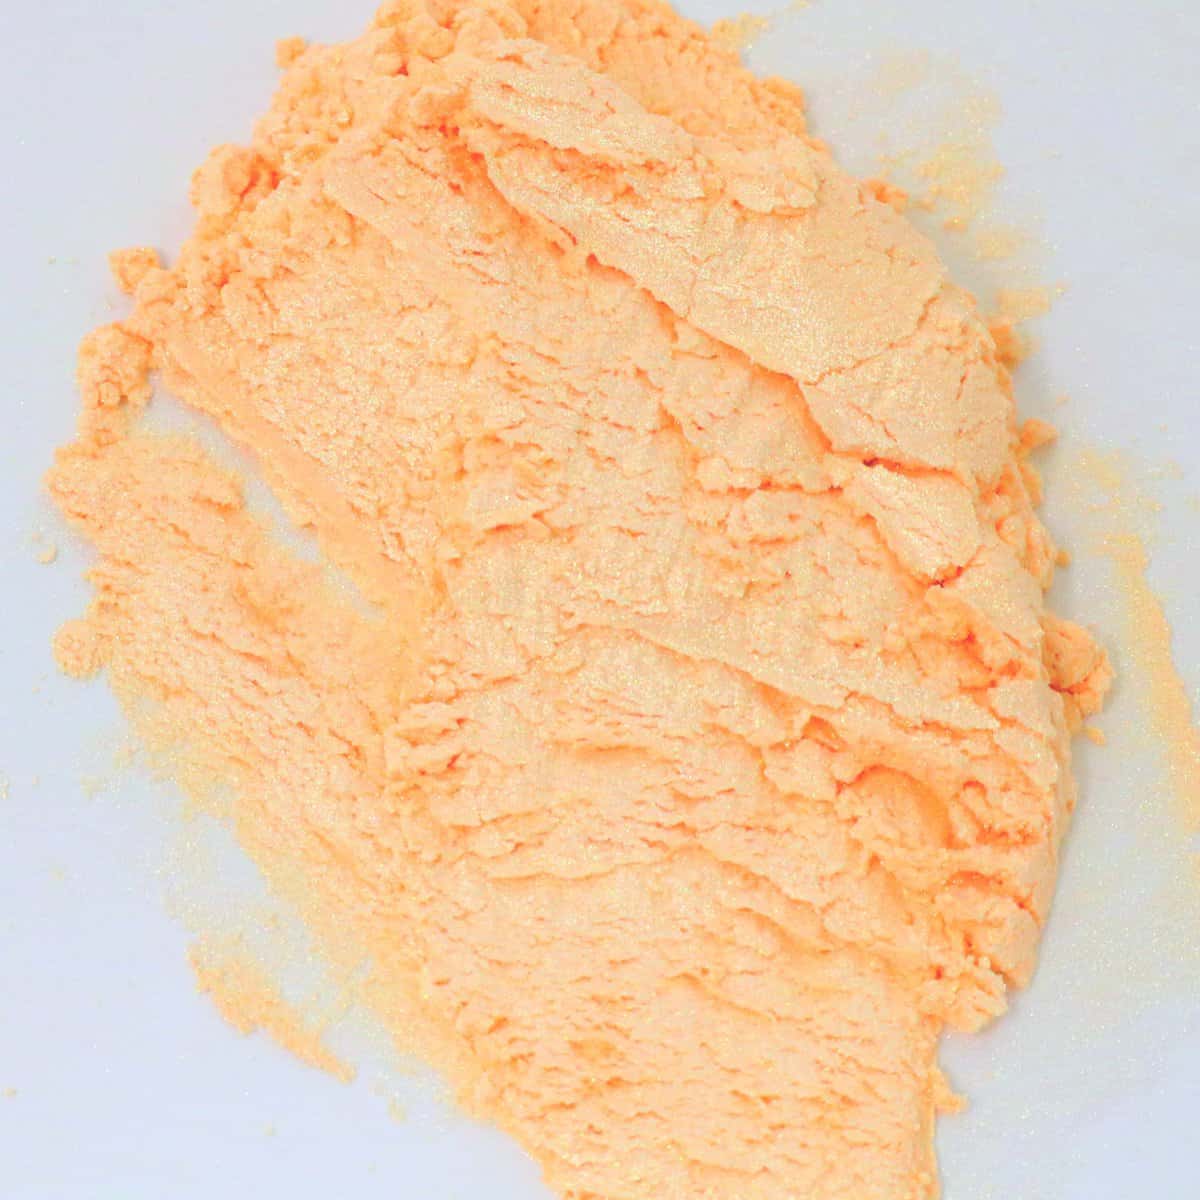 Orange mica pigment powder